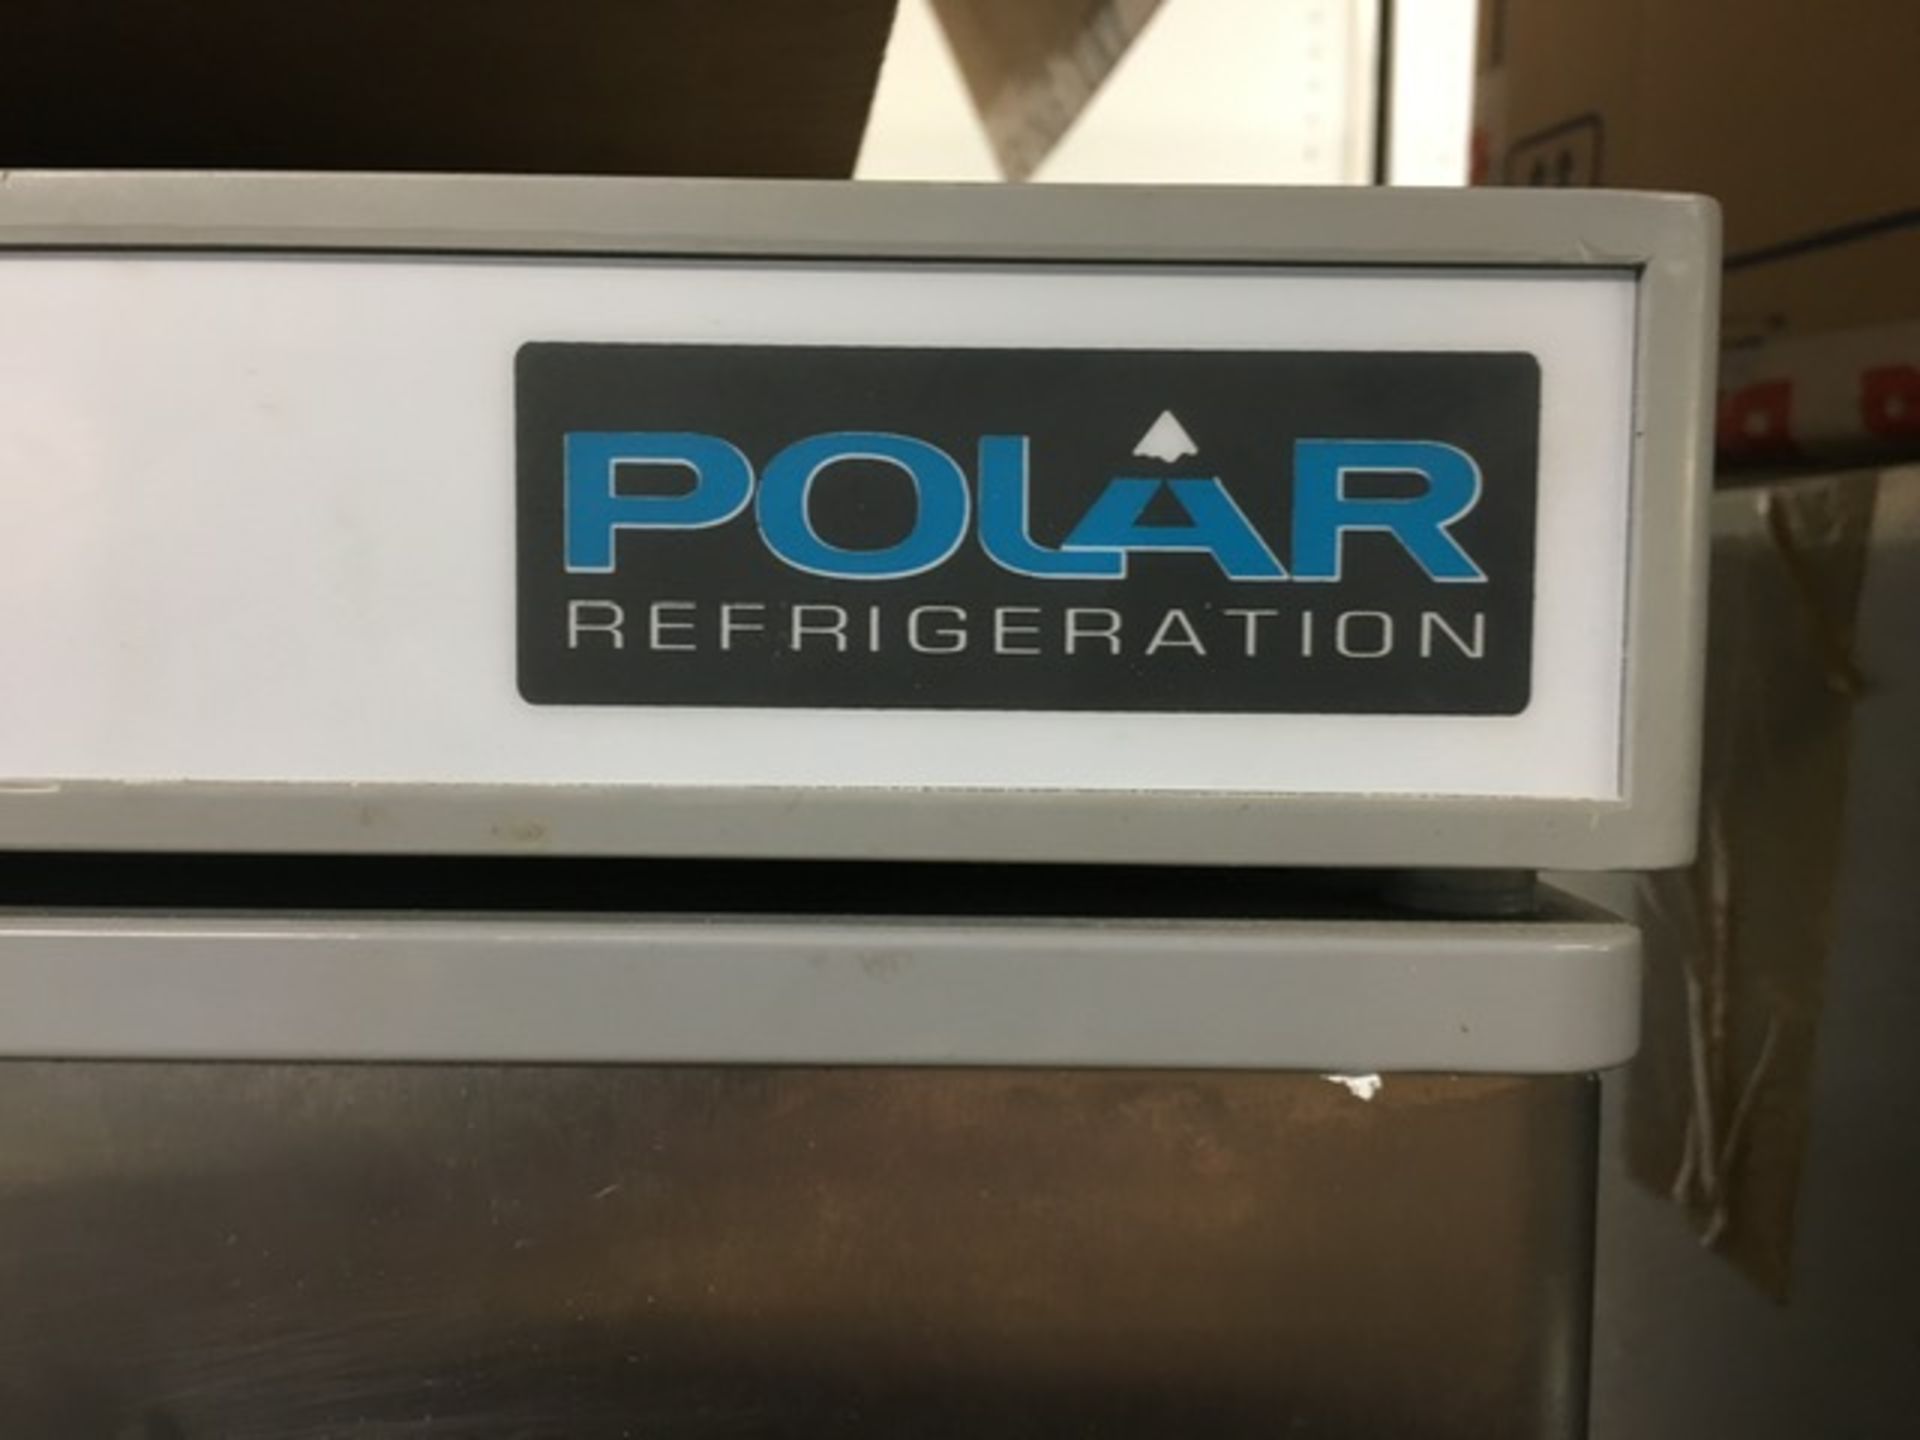 Polar Refrigeration CD082 Upright Refrigerator - Image 2 of 4